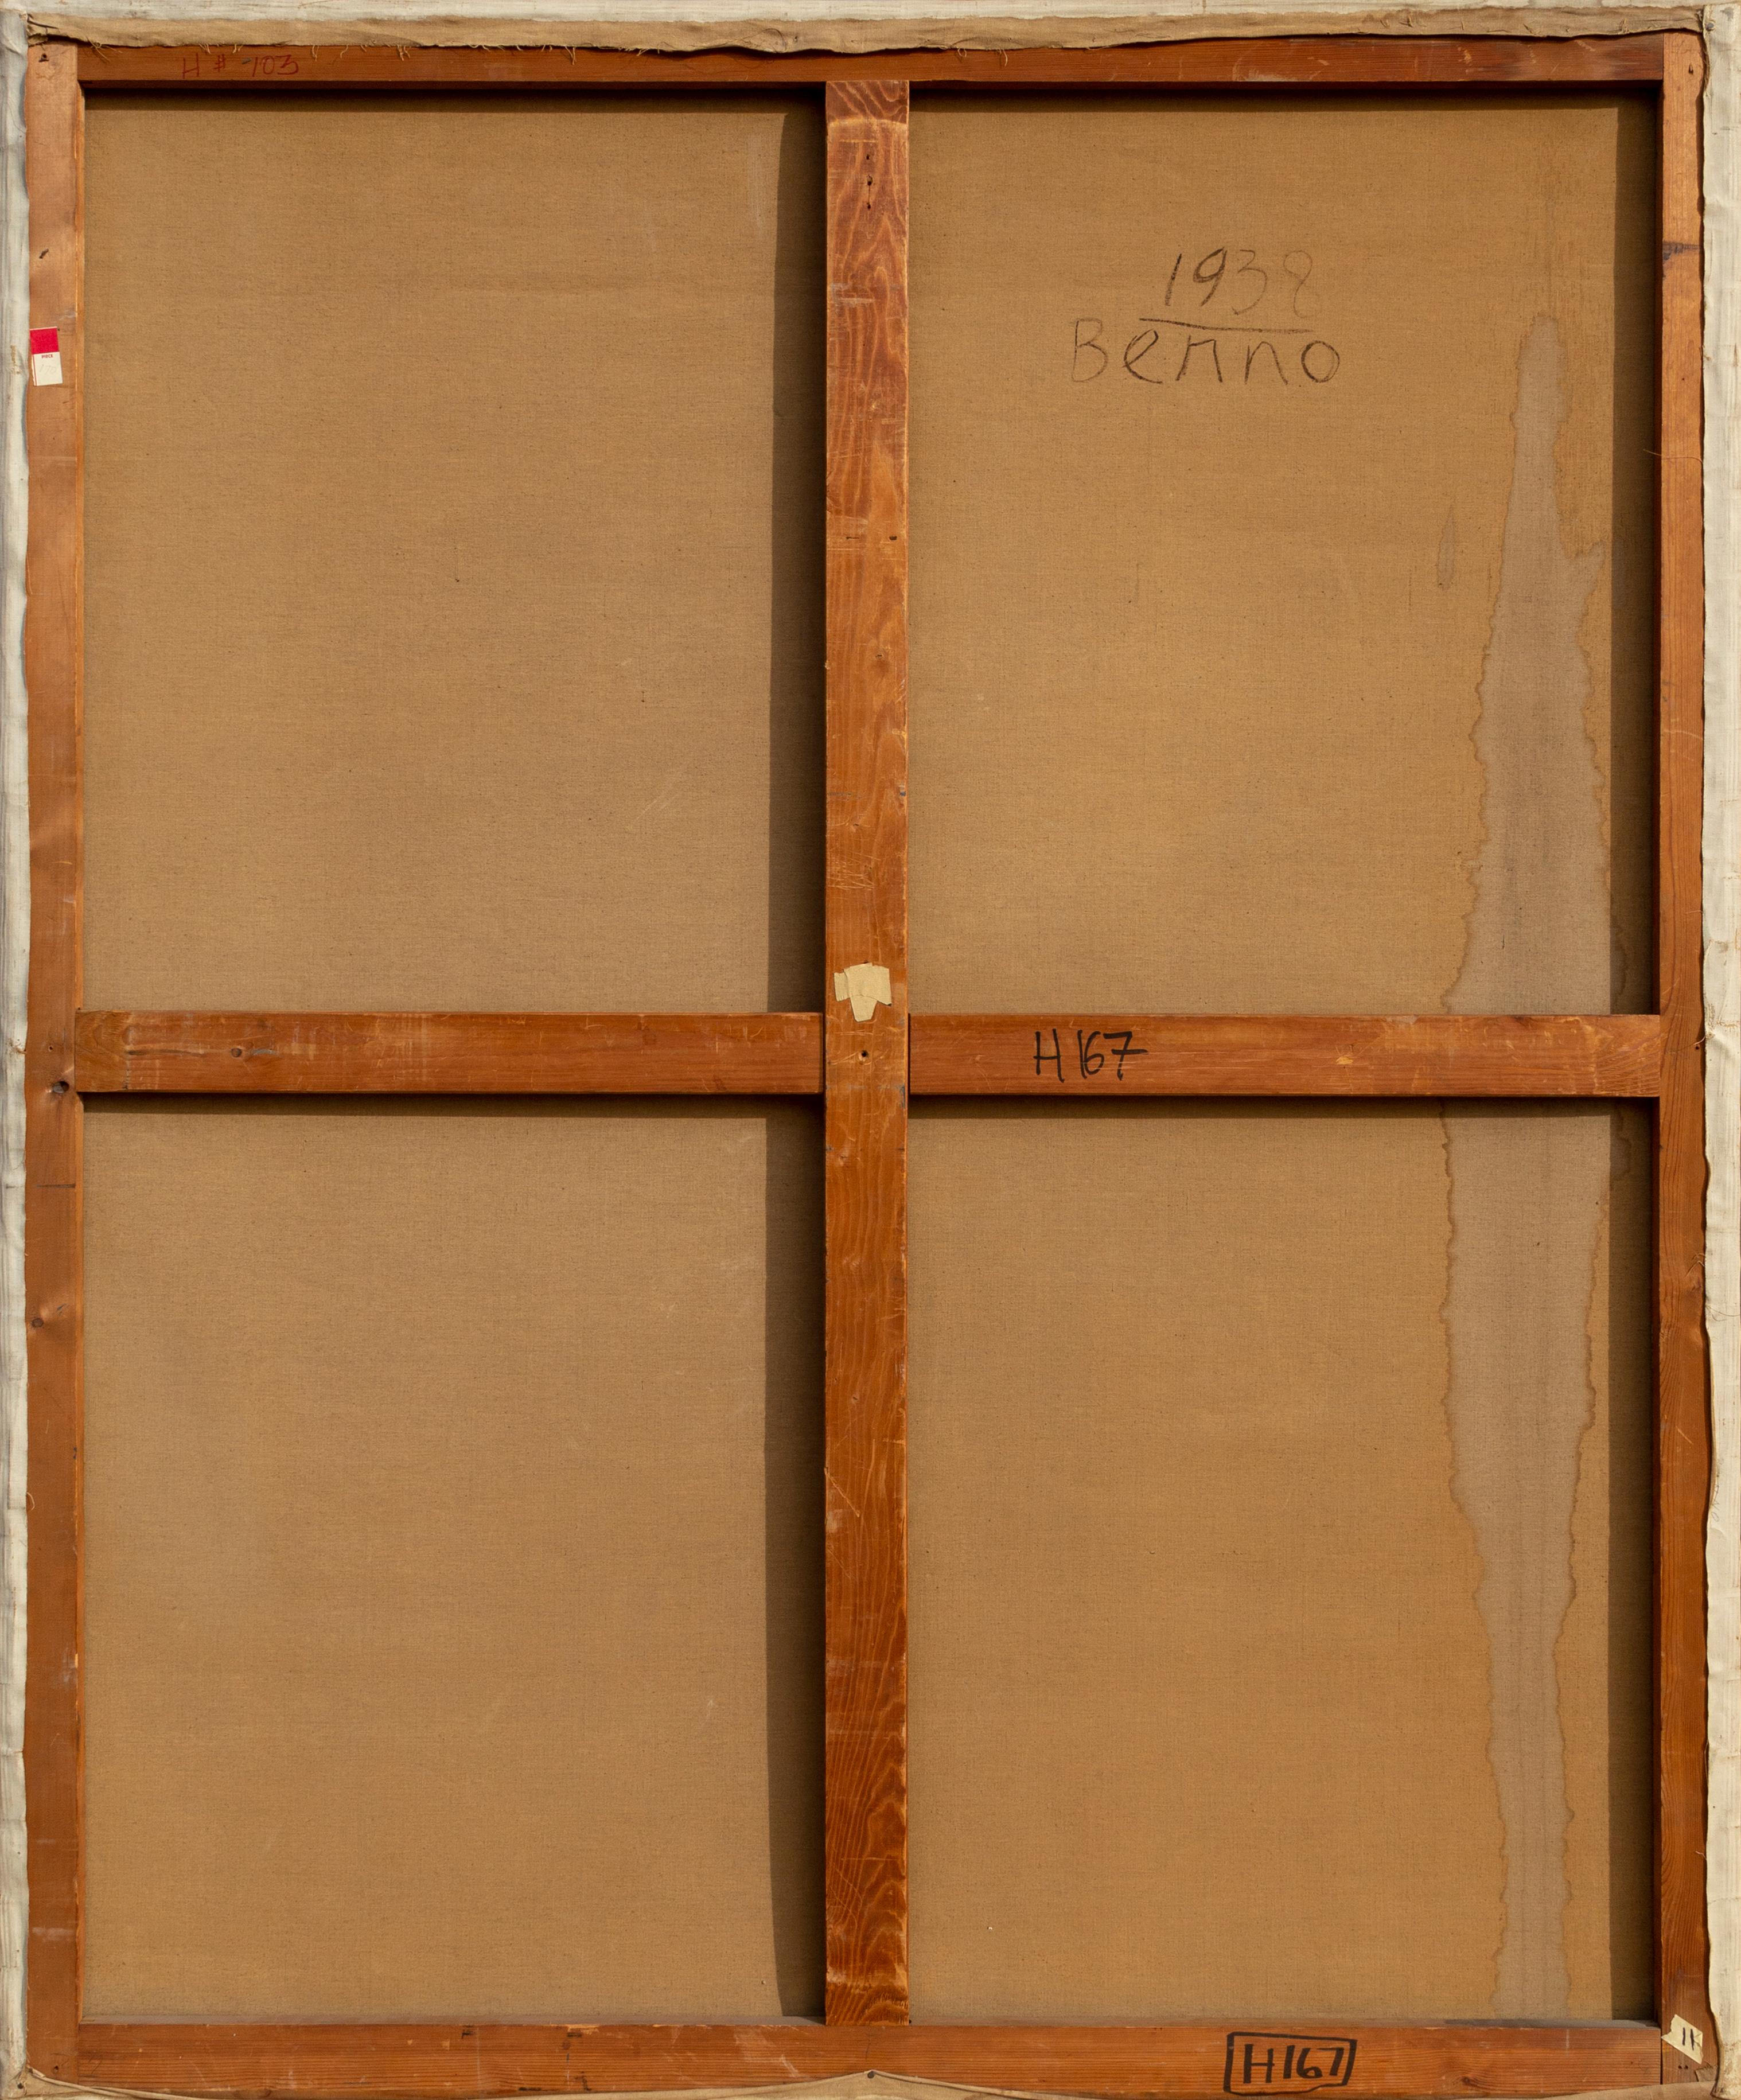 Ein Original-Ölgemälde auf Leinwand von Benjamin Benno, Amerikaner (1901 - 1980) mit den Maßen 64 x 46 Zoll, signiert und datiert unten rechts und verso.  Provenienz: O'Hara Gallery, NYC. In den frühen 1930er Jahren hatte sich Benno einen Ruf als